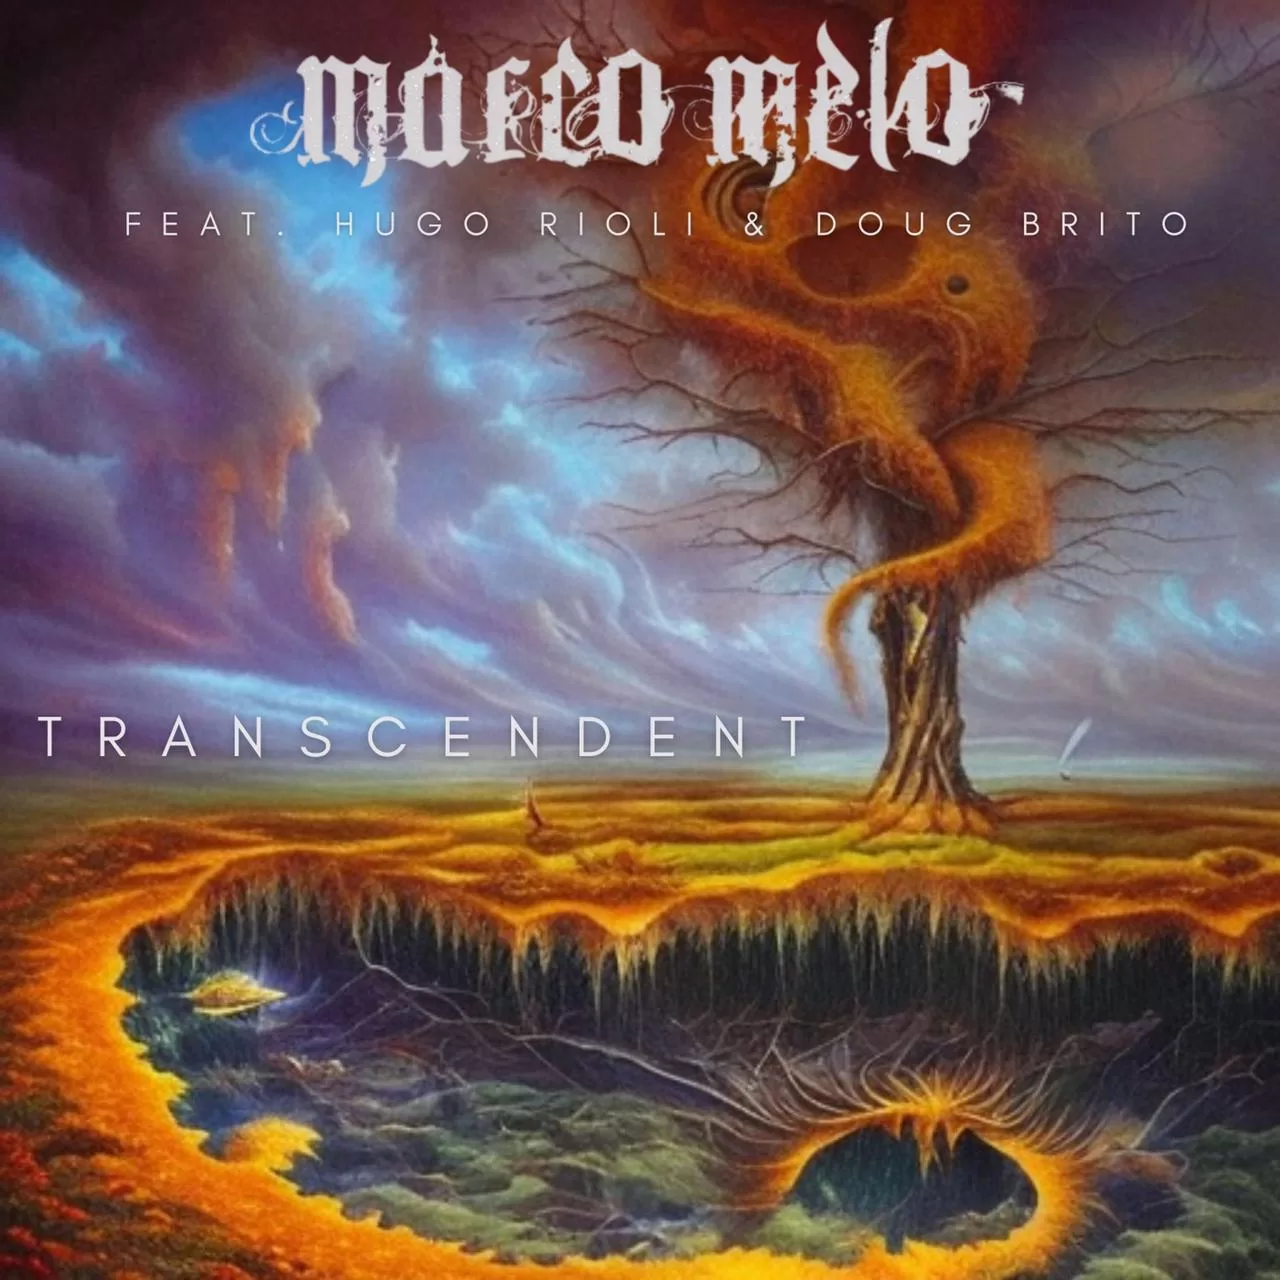 Marco Melo lança single “Transcendent” em colaboração com Hugo Rioli e Doug Brito